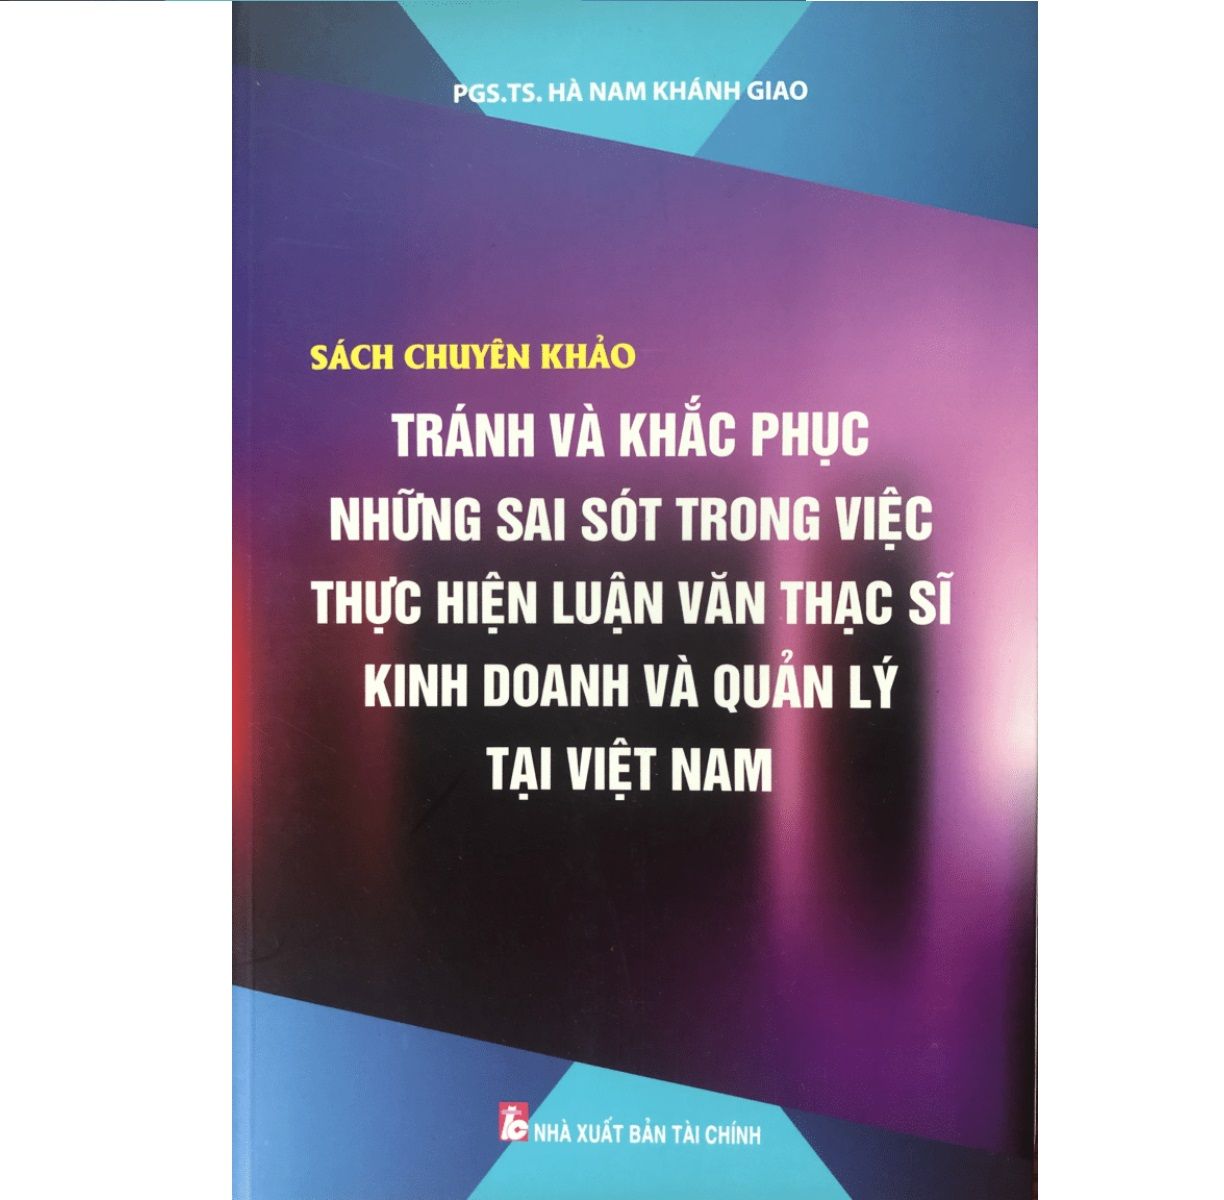  Sách Chuyên Khảo Tránh Và Khắc Phục Những Sai Sót Trong Công Việc Thực Hiện Luận Văn Thạc Sĩ Kinh Doanh Và Quản Lý Tại Việt Nam 